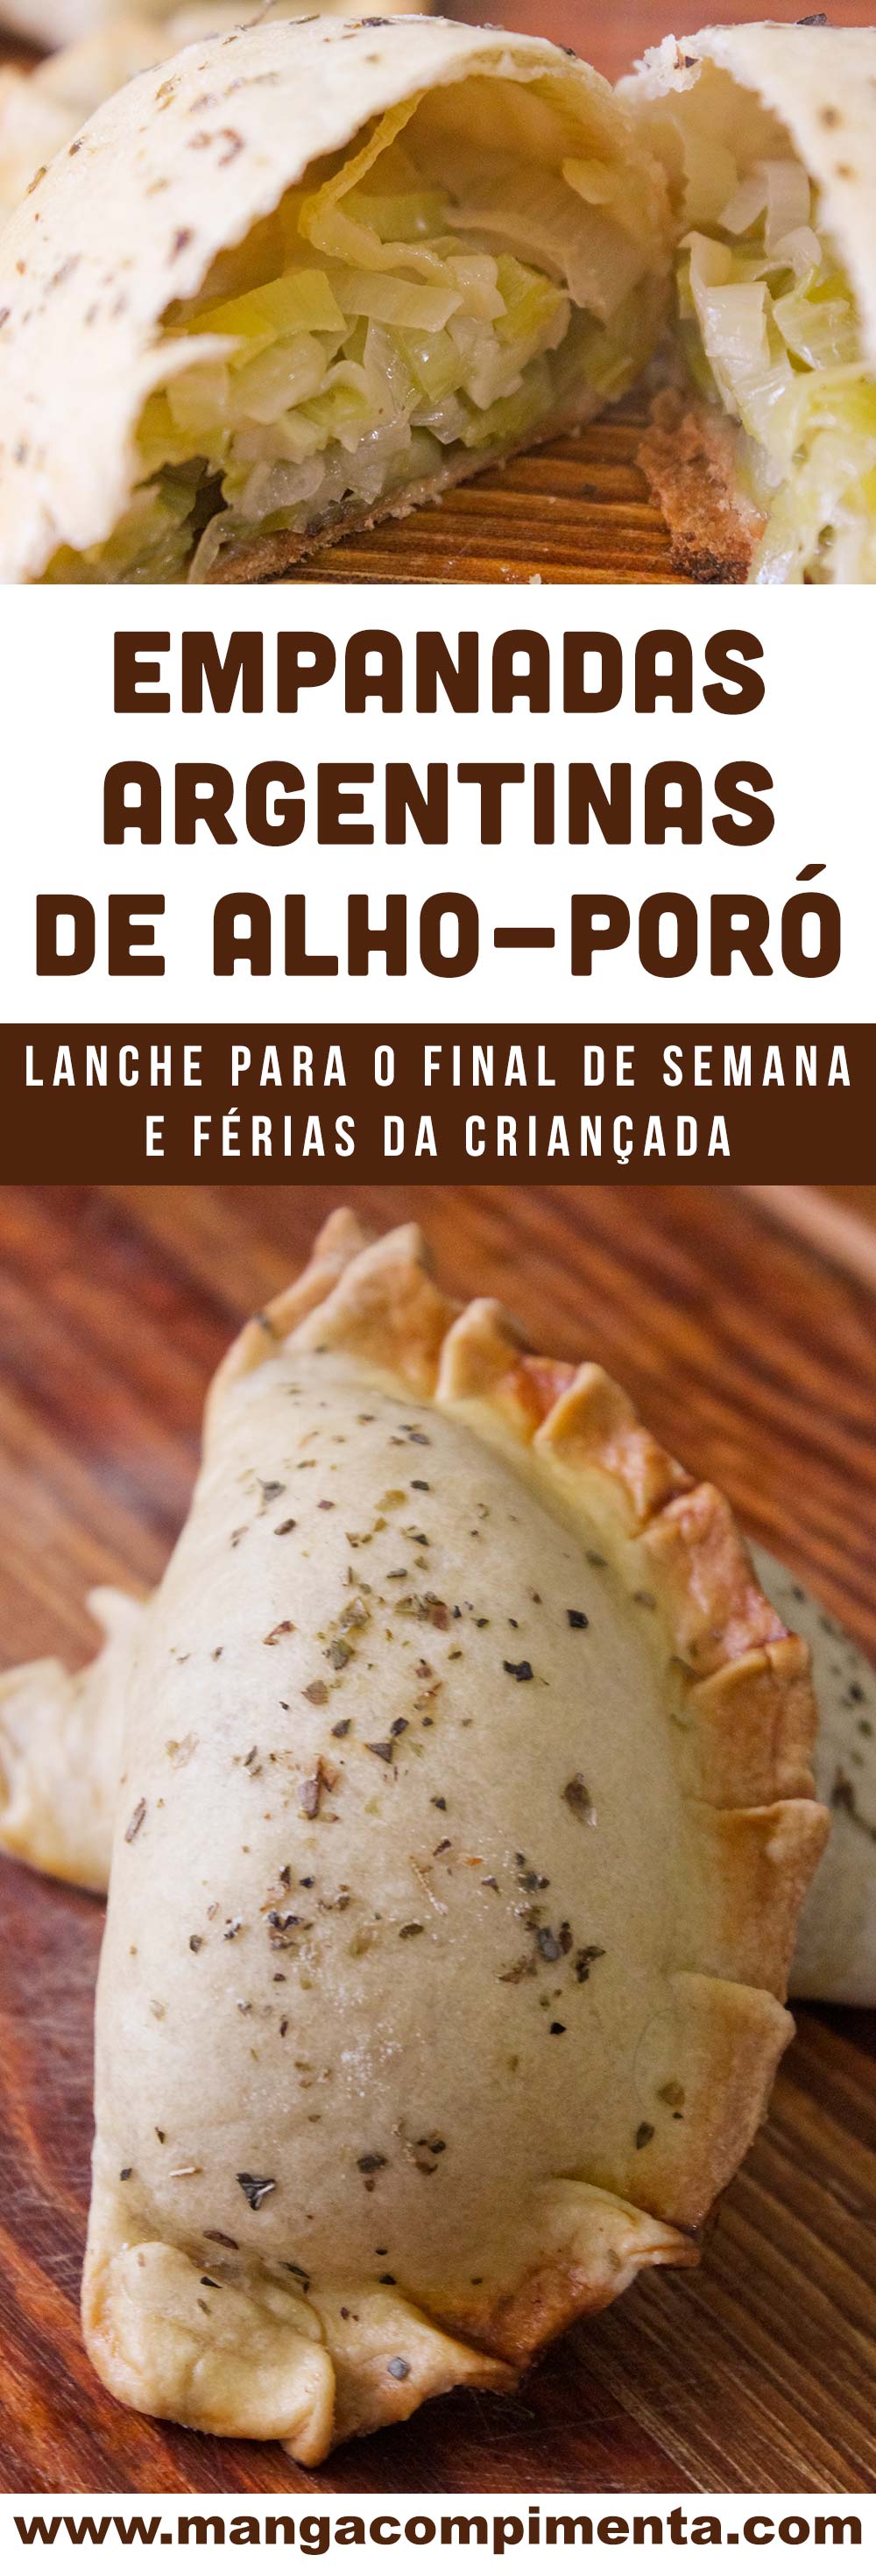 Empanadas Argentinas de Alho-poró - lanche delicioso para as férias da criançada!